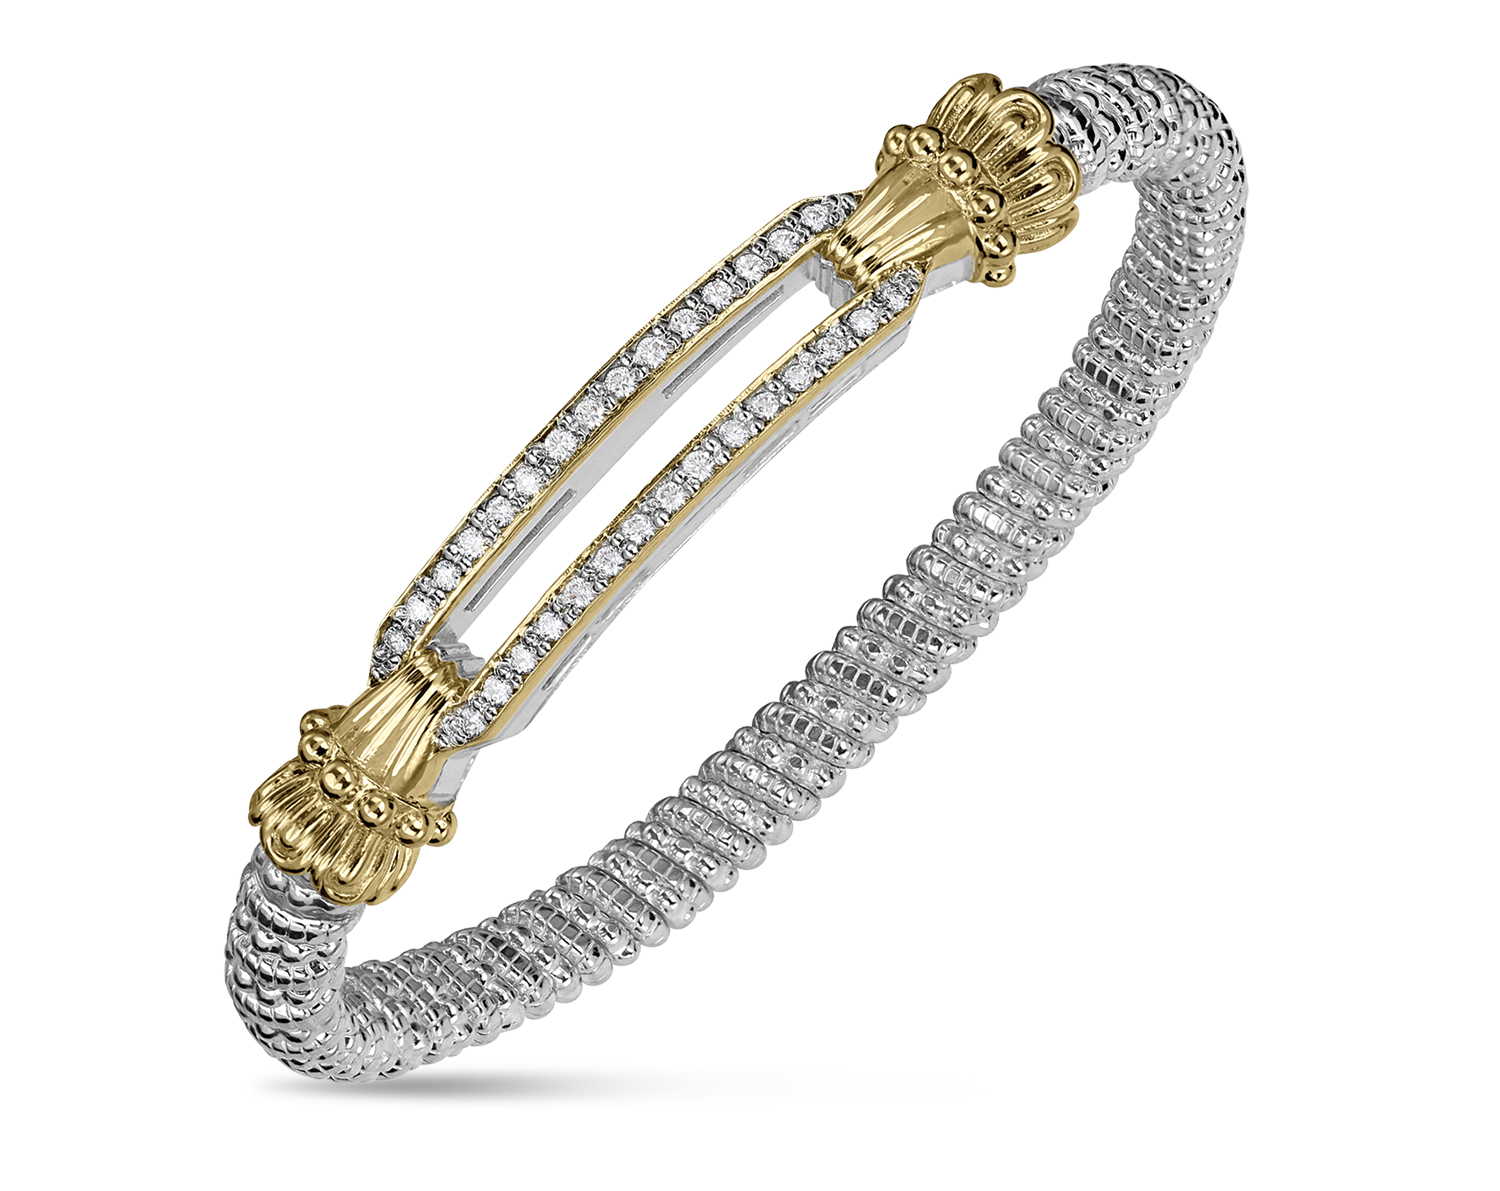 INSTORE Design Awards 2023 – Bracelet Under $5,000